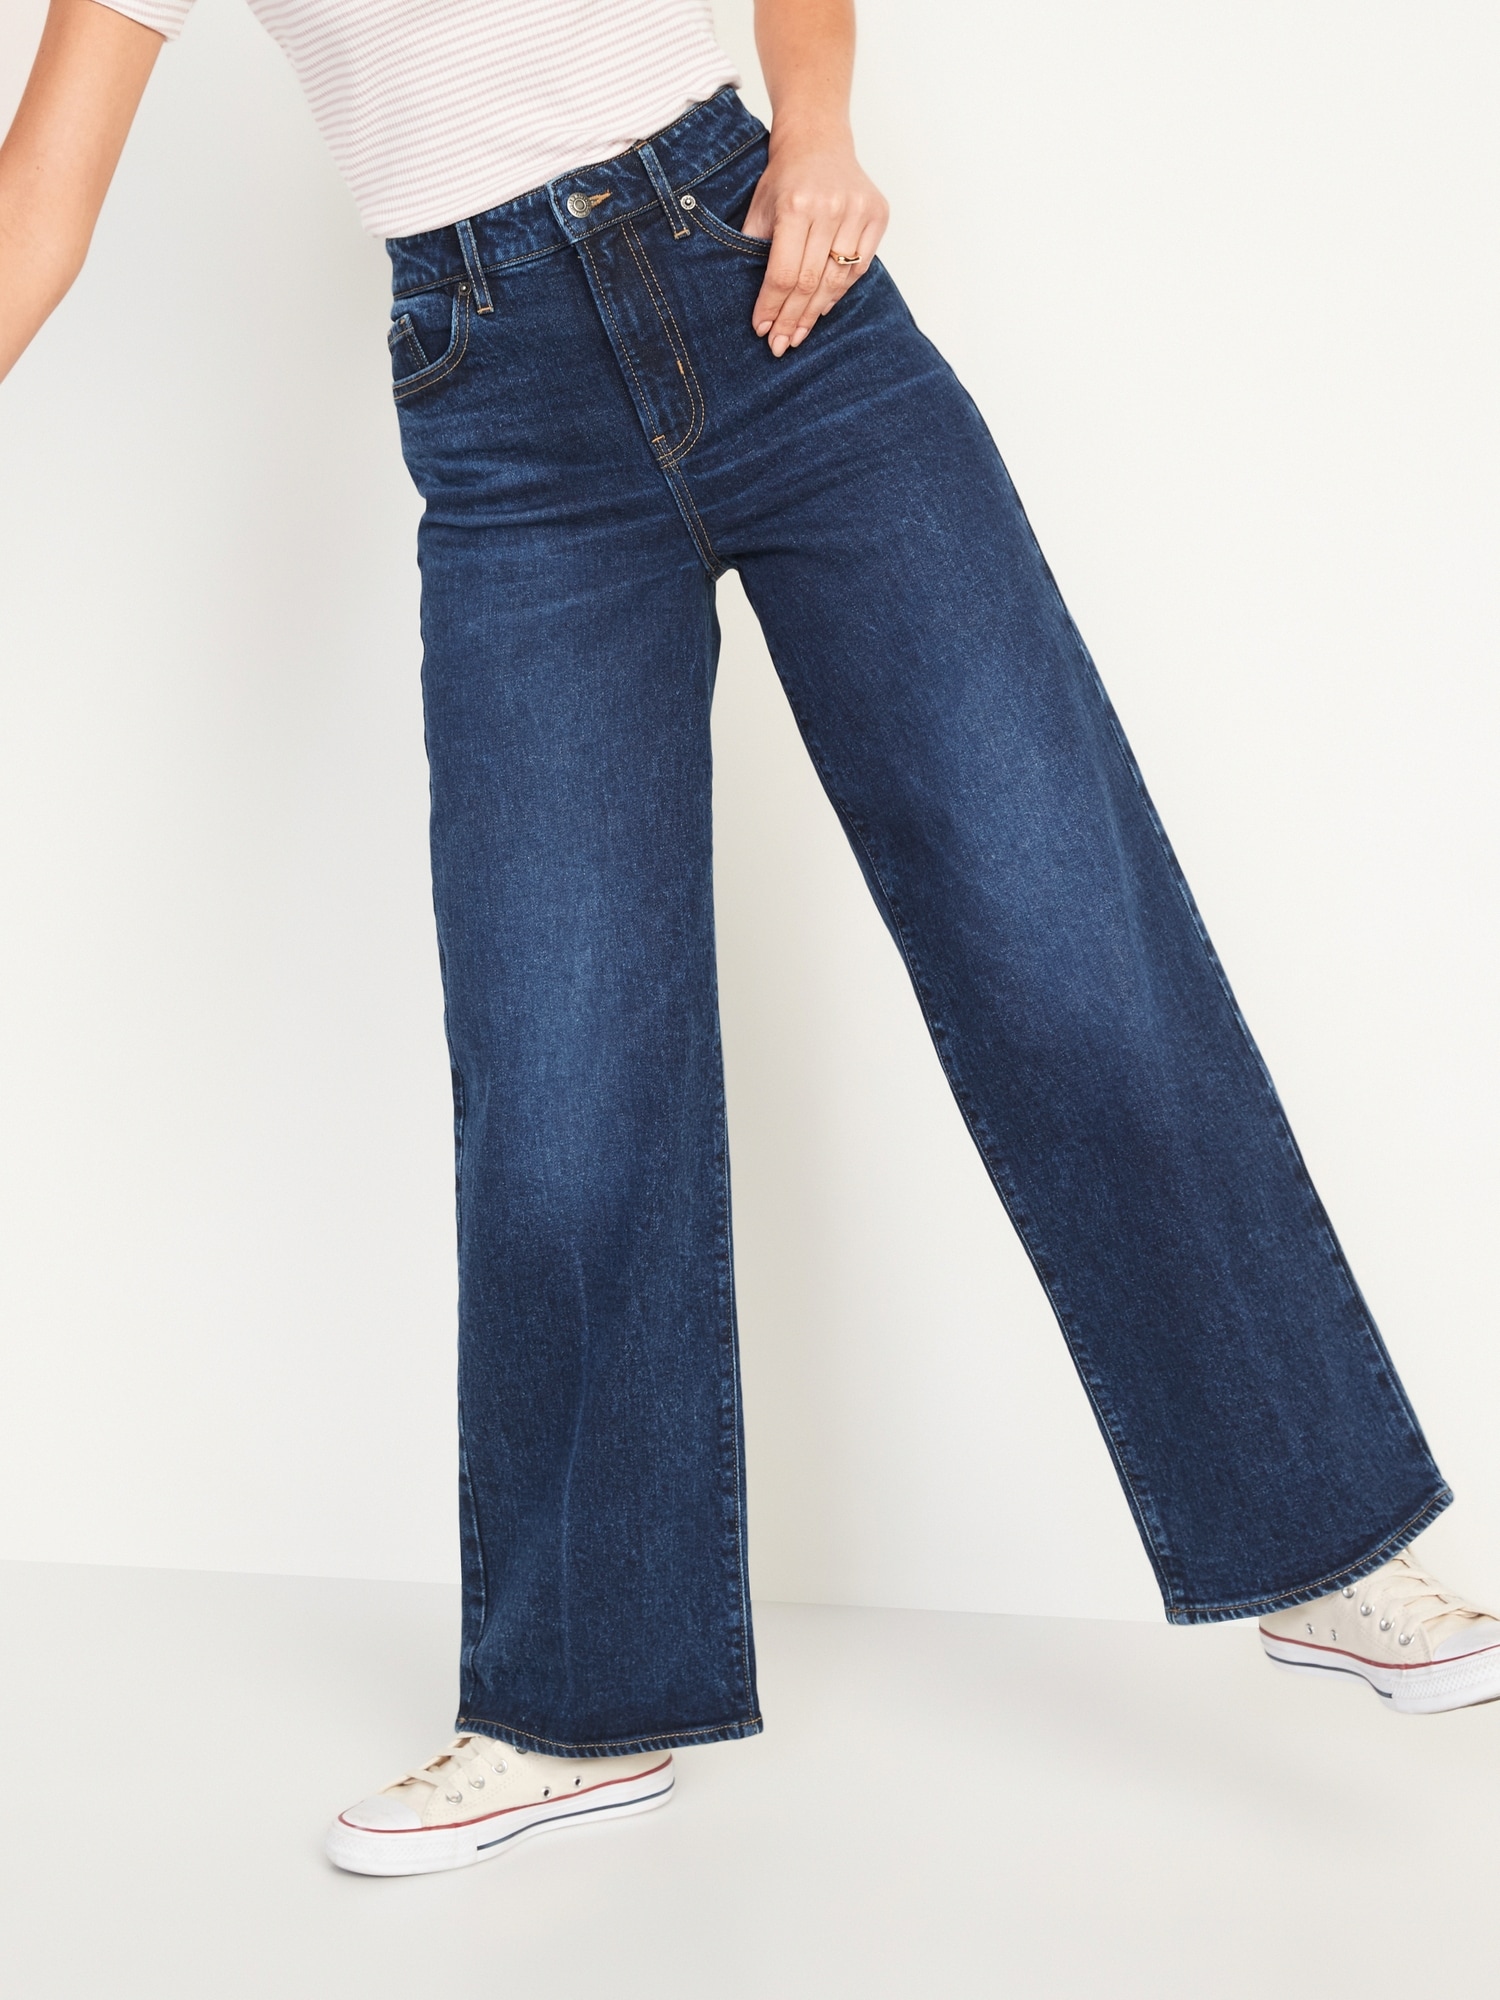 Mile High Wide Leg Women's Jeans - Dark Wash